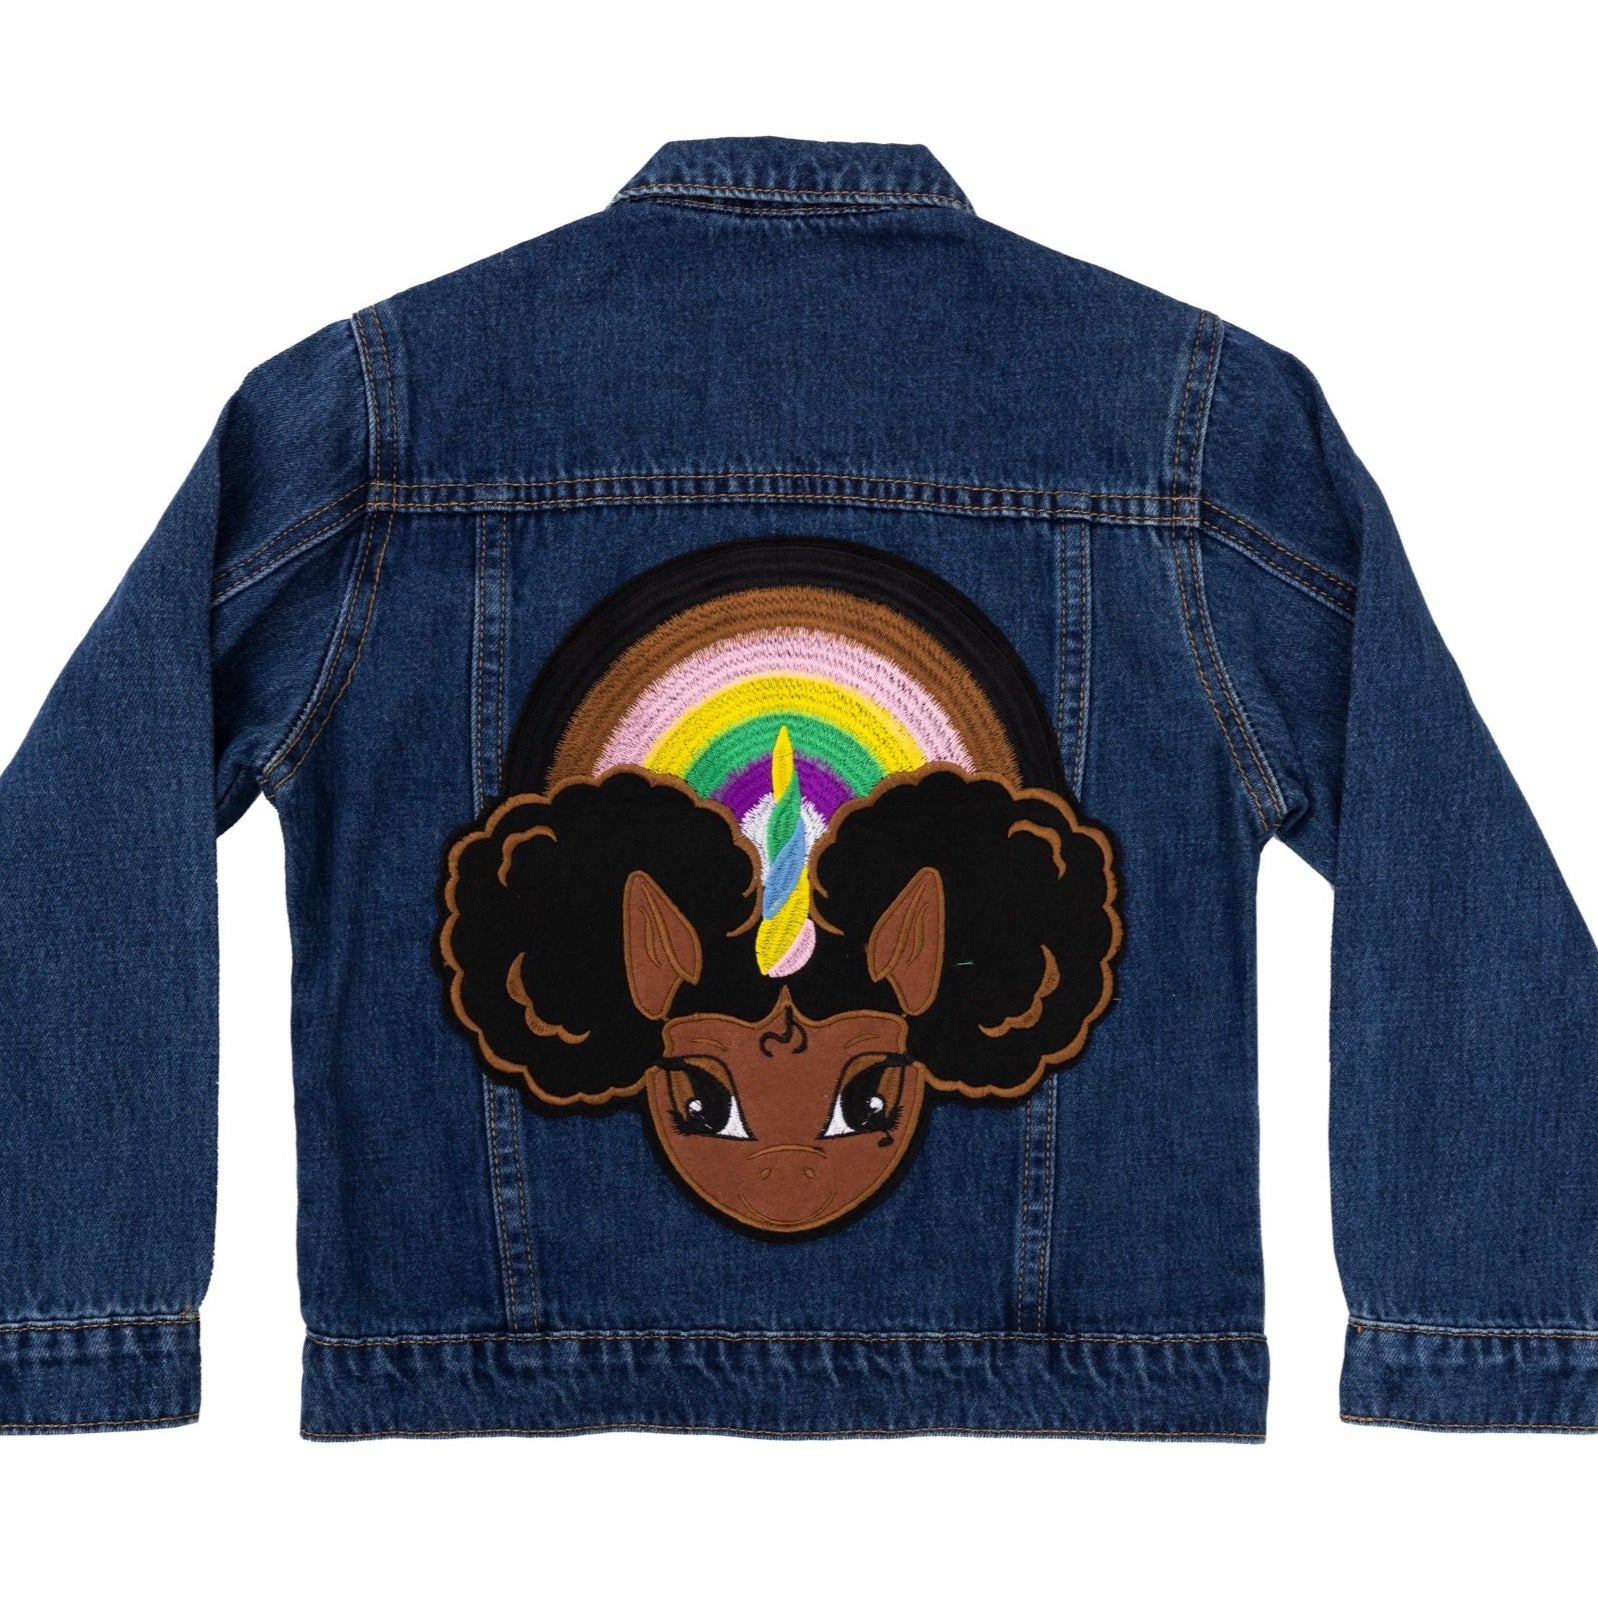 Chocolate Rainbows Embroidered Denim Jacket with Patch - Dark Stonewash